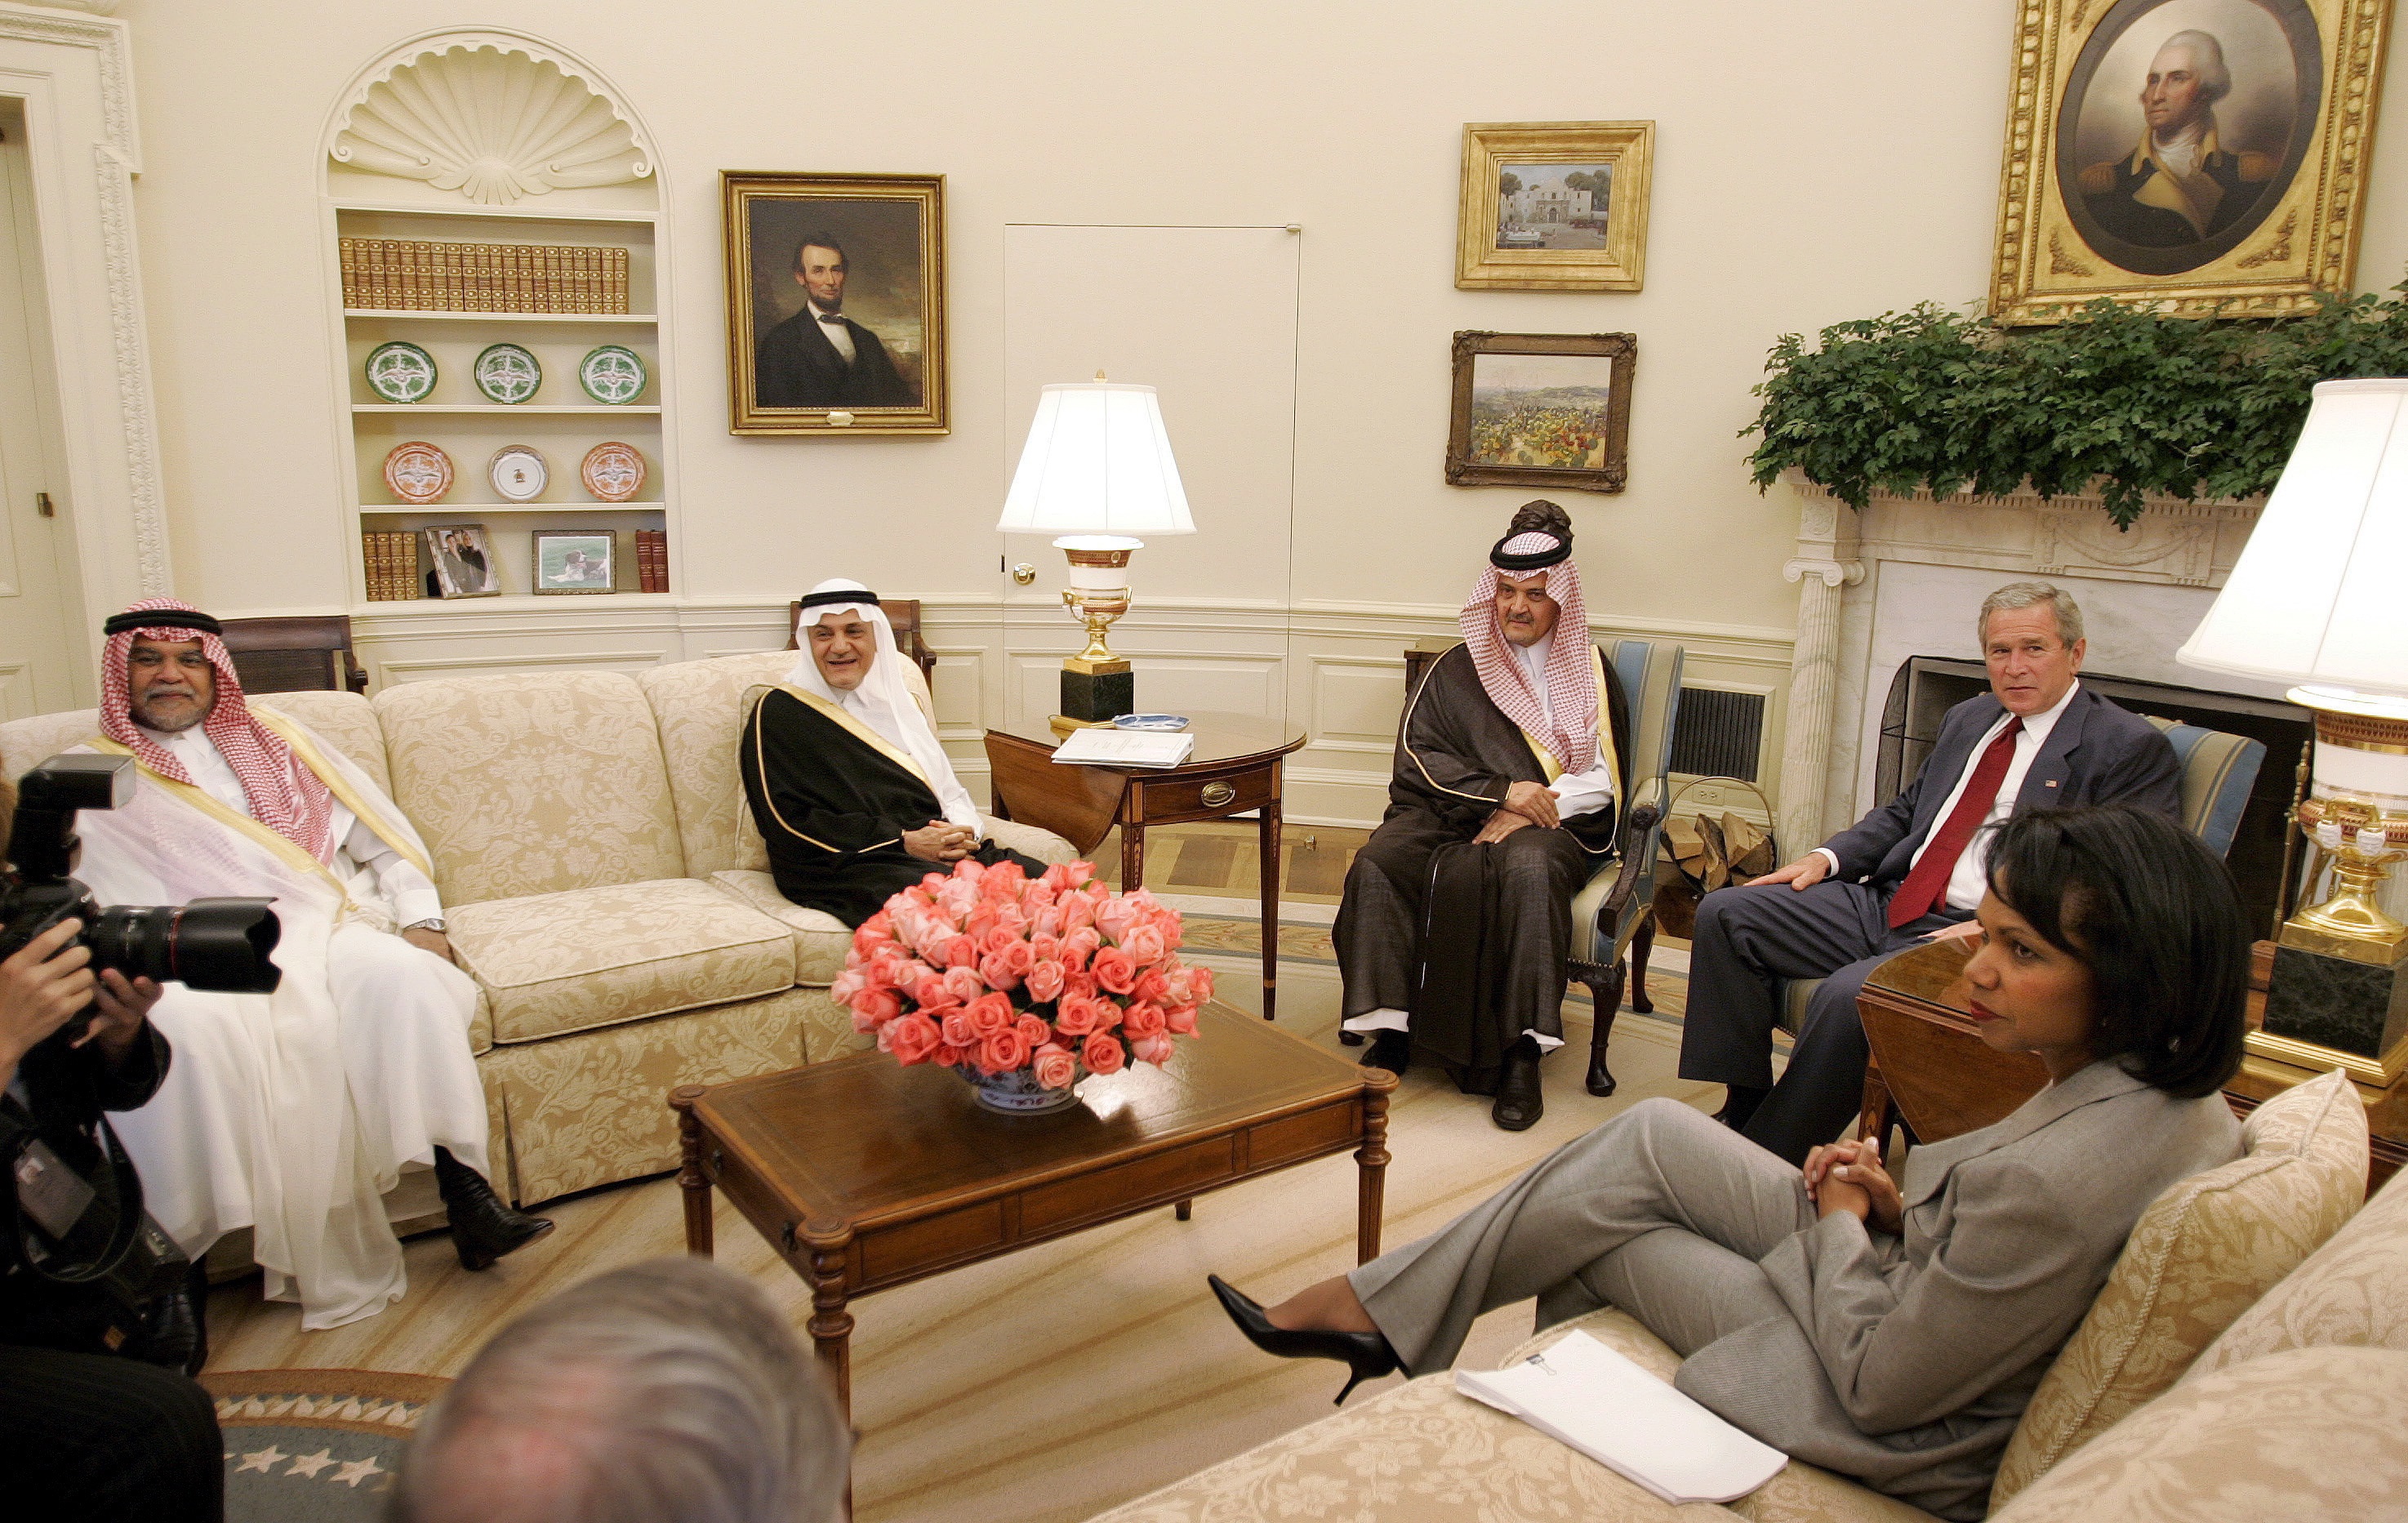  الرئيس الأميركي جورج دبليو بوش ووزيرة الخارجية الأميركية كوندوليزا رايس في لقاء مع وزير الخارجية السعودي سعود الفيصل والسفير تركي الفيصل والأمير بندر بن سلطان عام 2006 (الأوروبية)